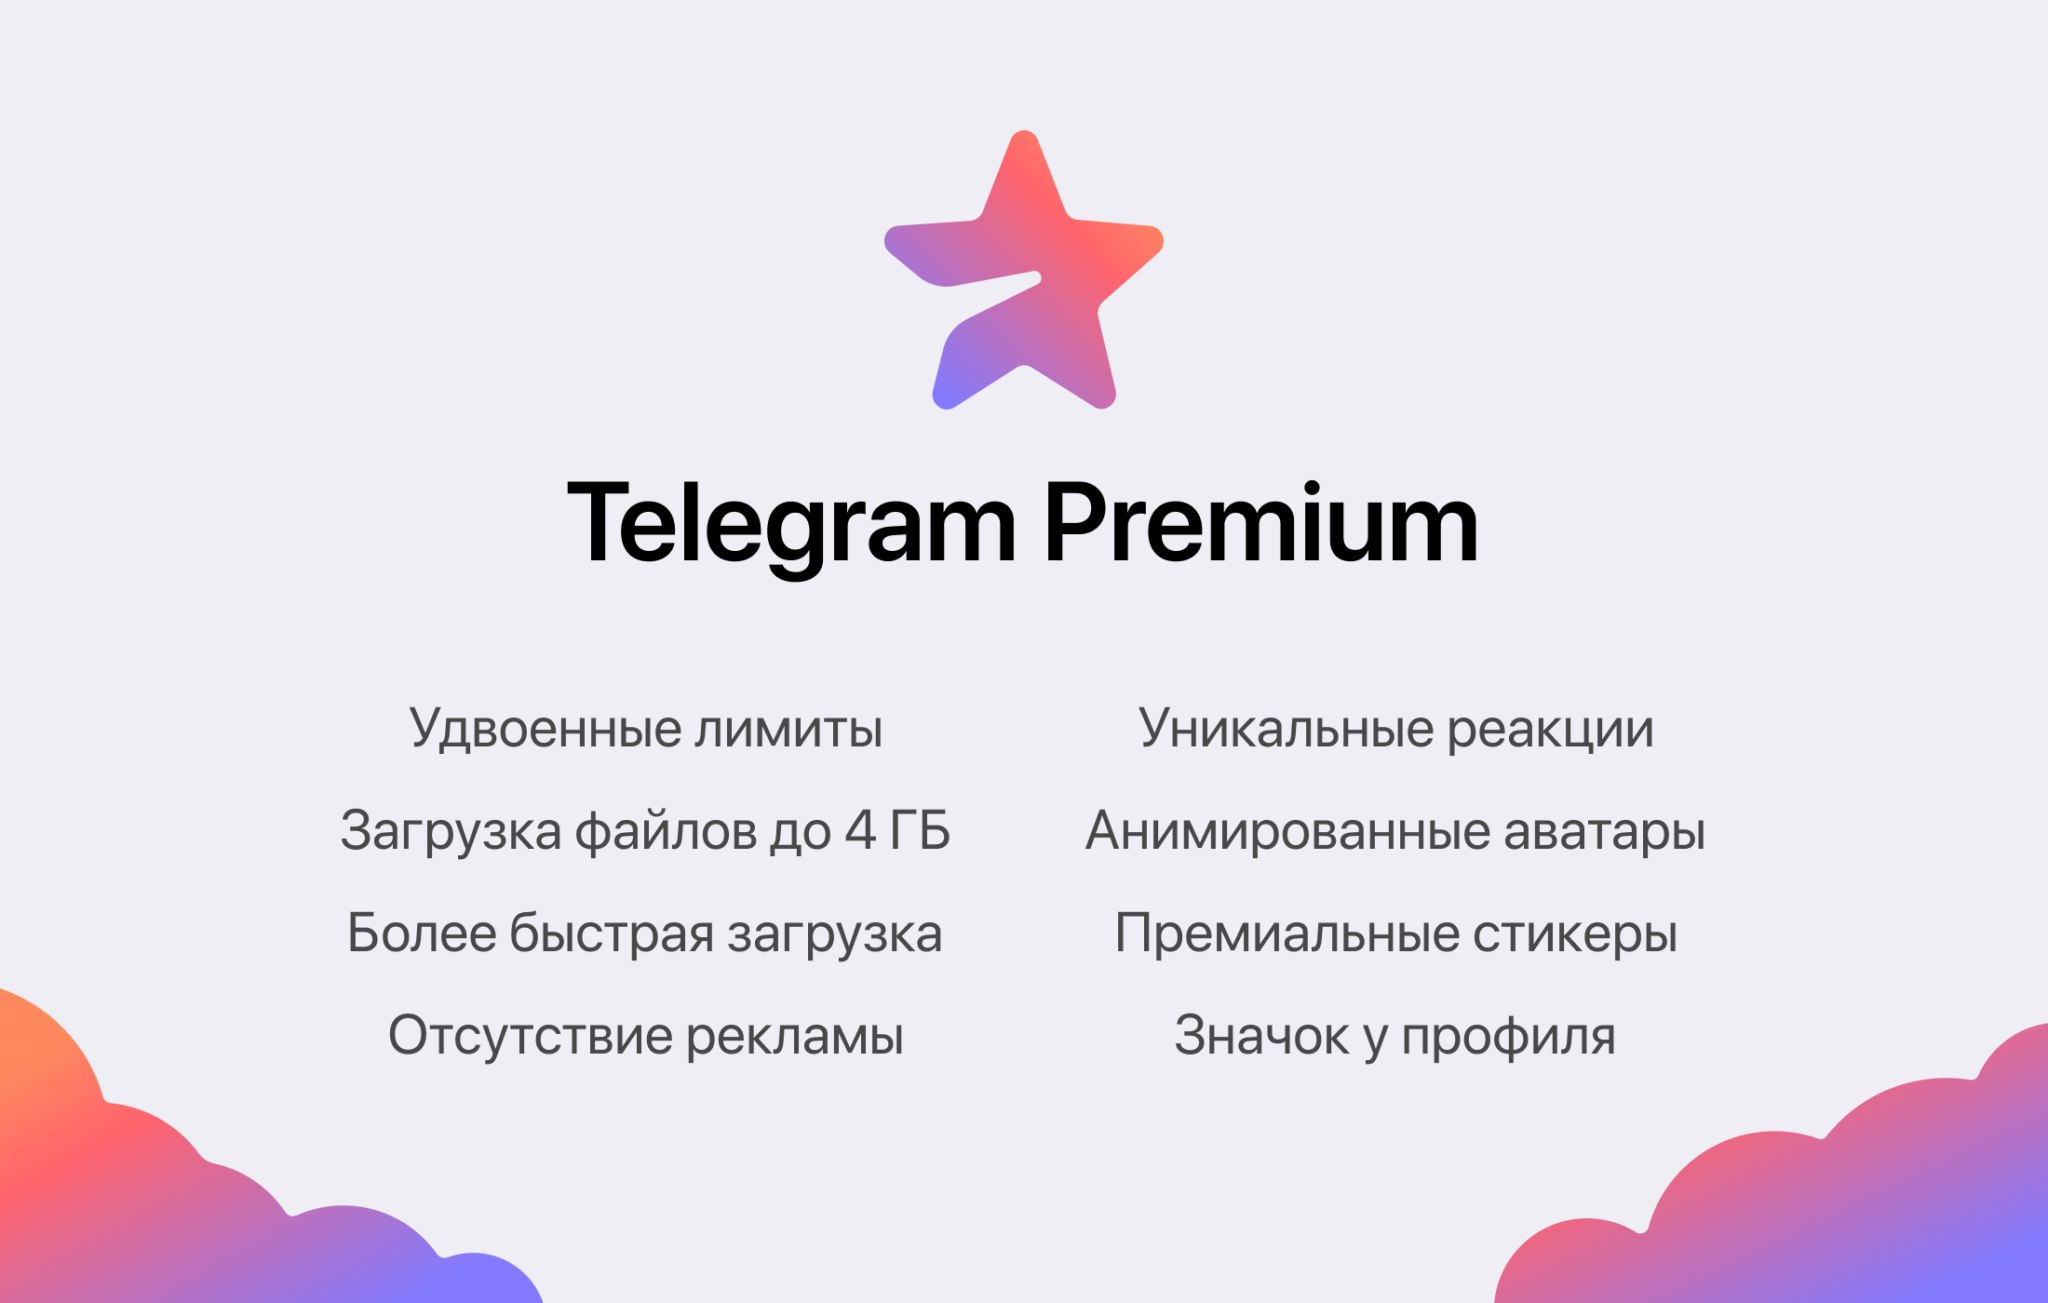 Sin anuncios, envío de un archivo de hasta 4 GB y reacciones únicas: ha aparecido una suscripción premium en la versión beta de Telegram